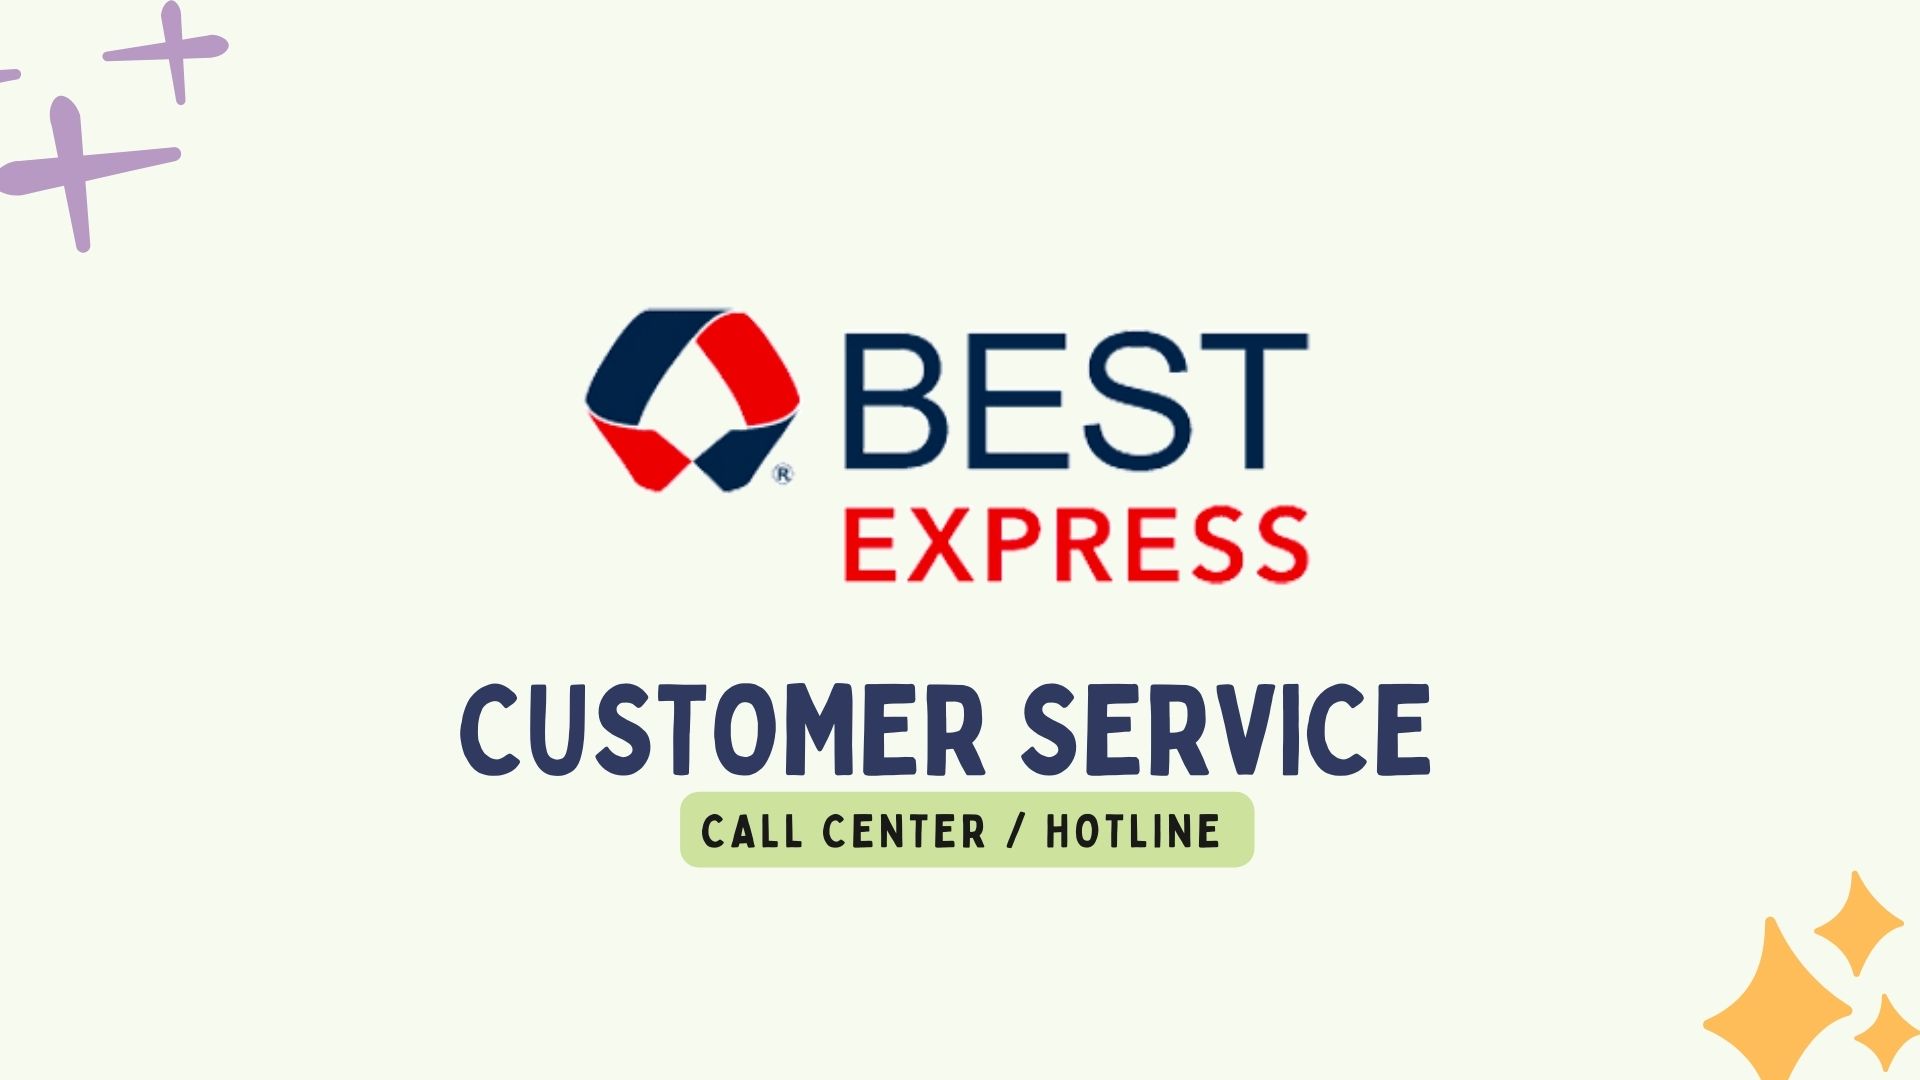 Best Express Customer Service